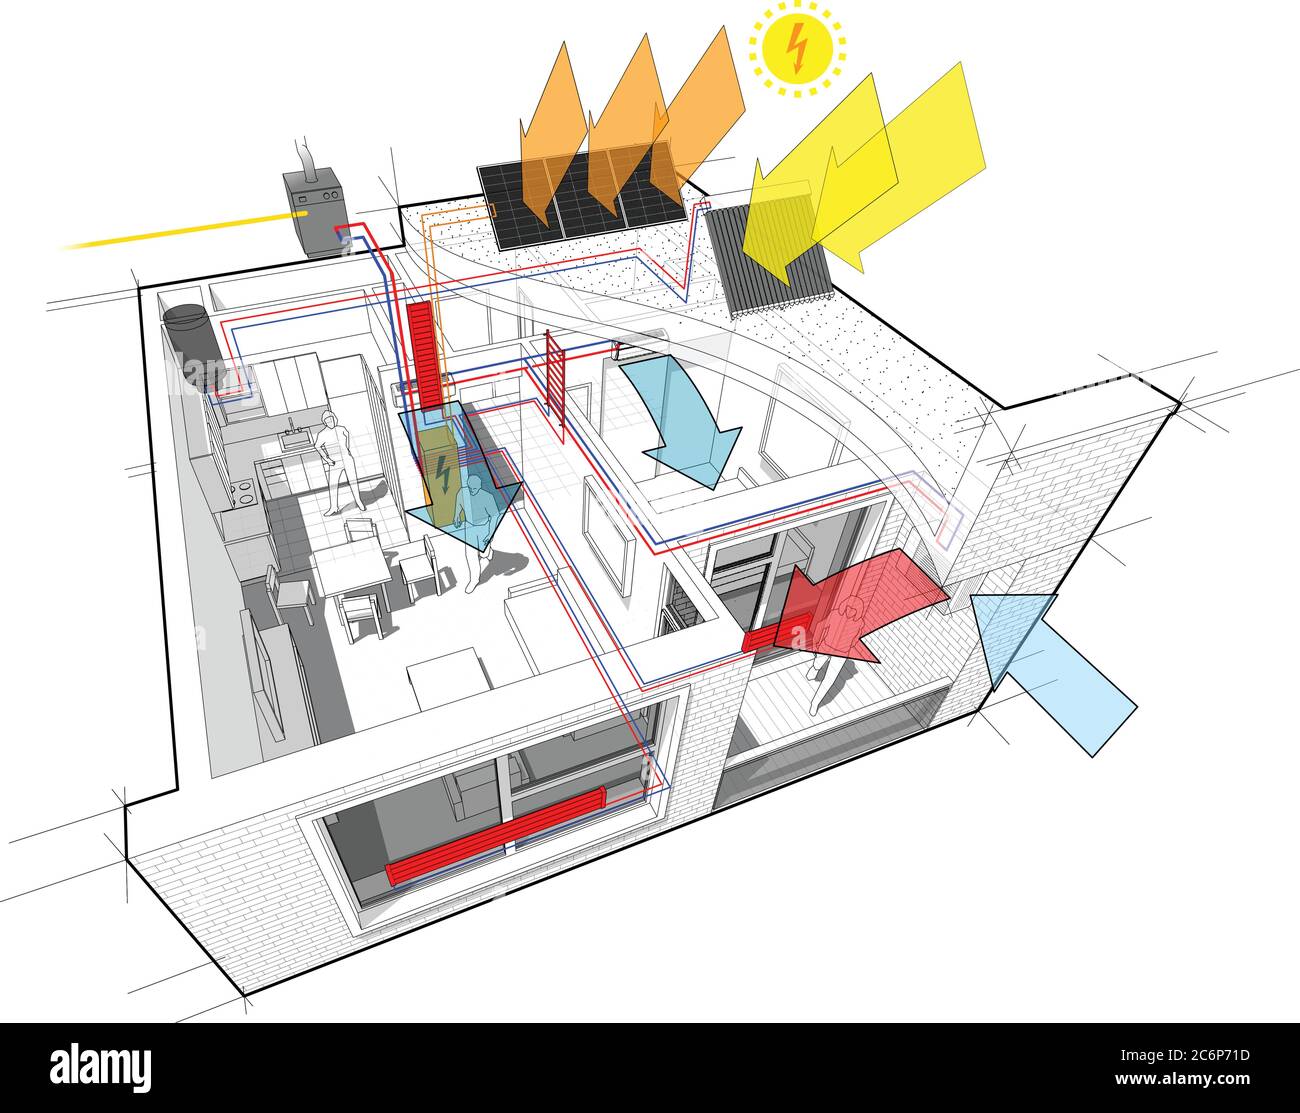 Schema di appartamenti con riscaldamento a radiatore e caldaia a gas, pannelli fotovoltaici e solari e aria condizionata Illustrazione Vettoriale